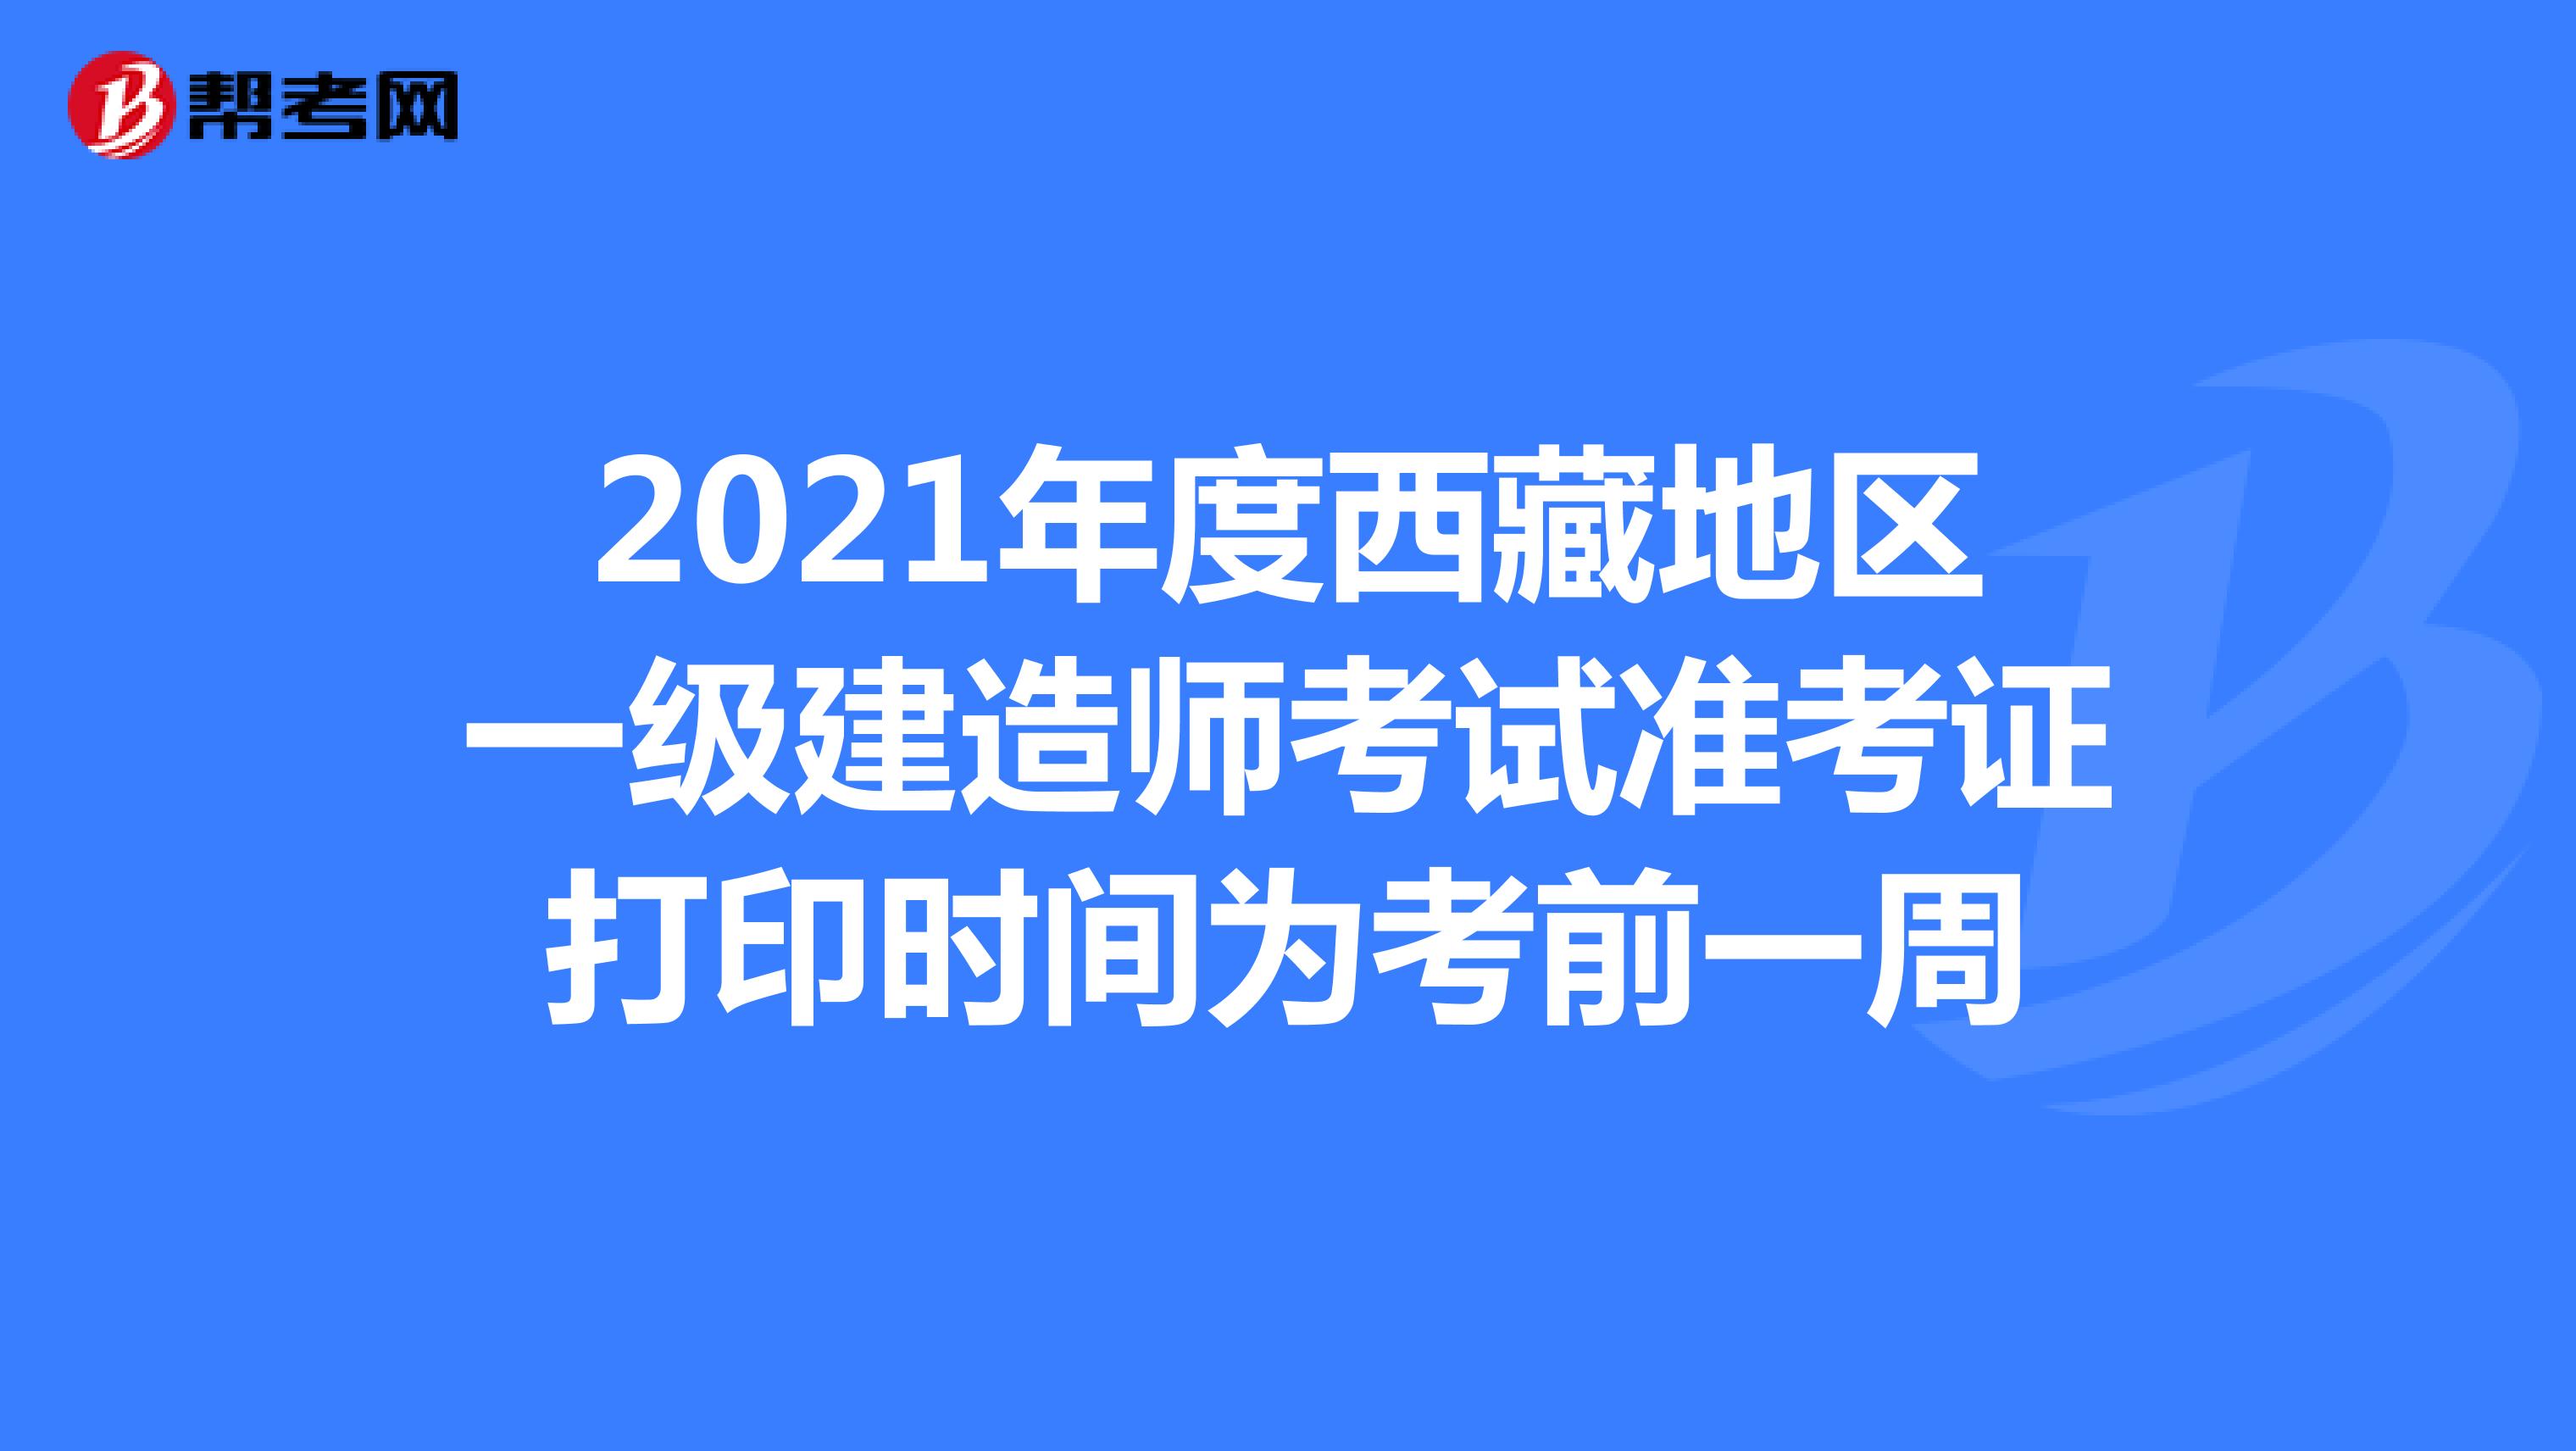 2021年度西藏地区一级建造师考试准考证打印时间为考前一周